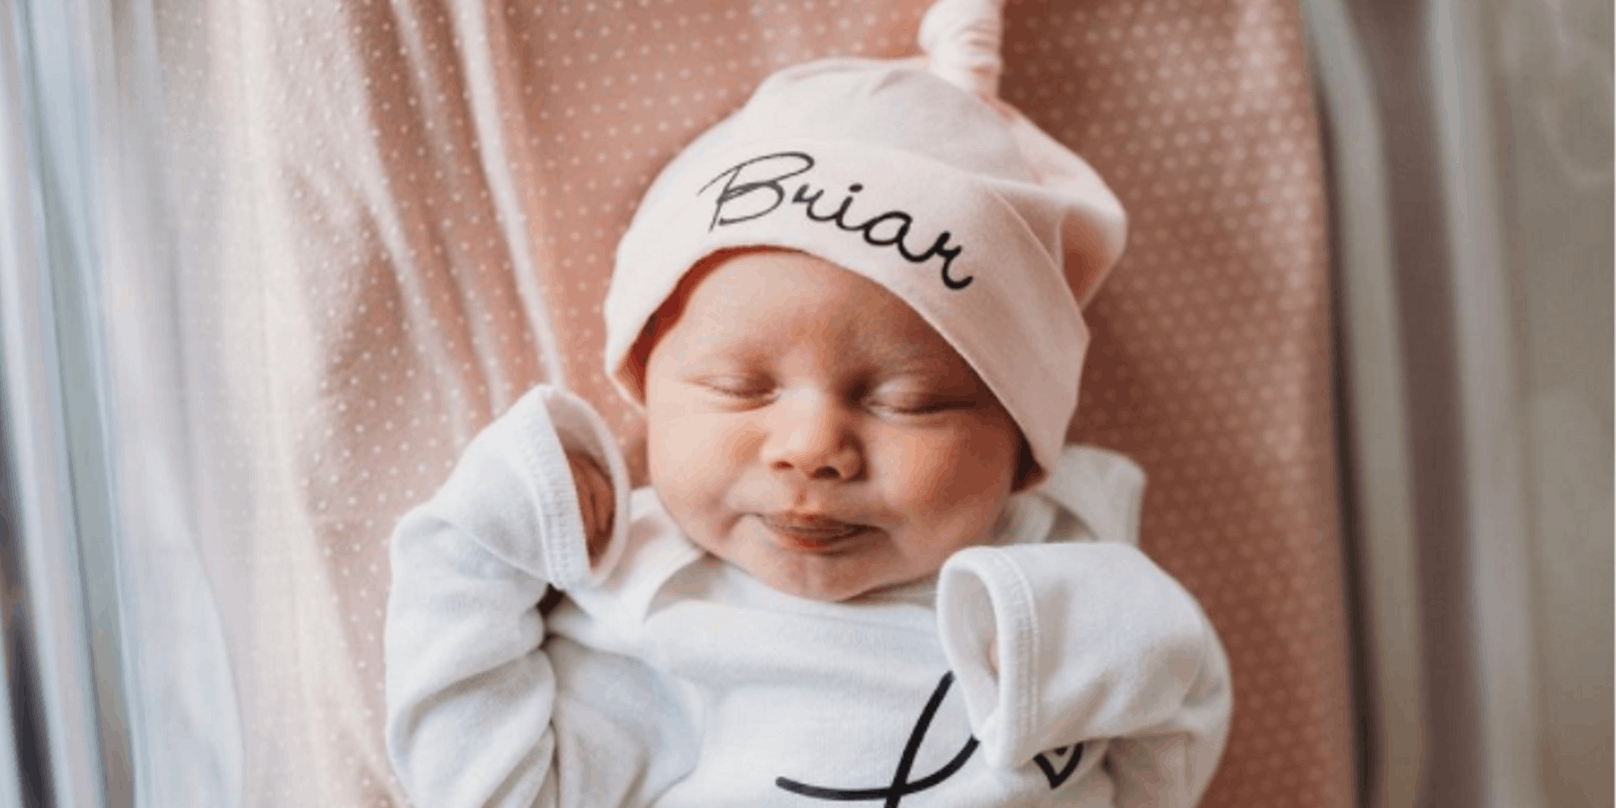 Die kleine Briar Juliette Lockwood kam am 2. November 2020 zur Welt.